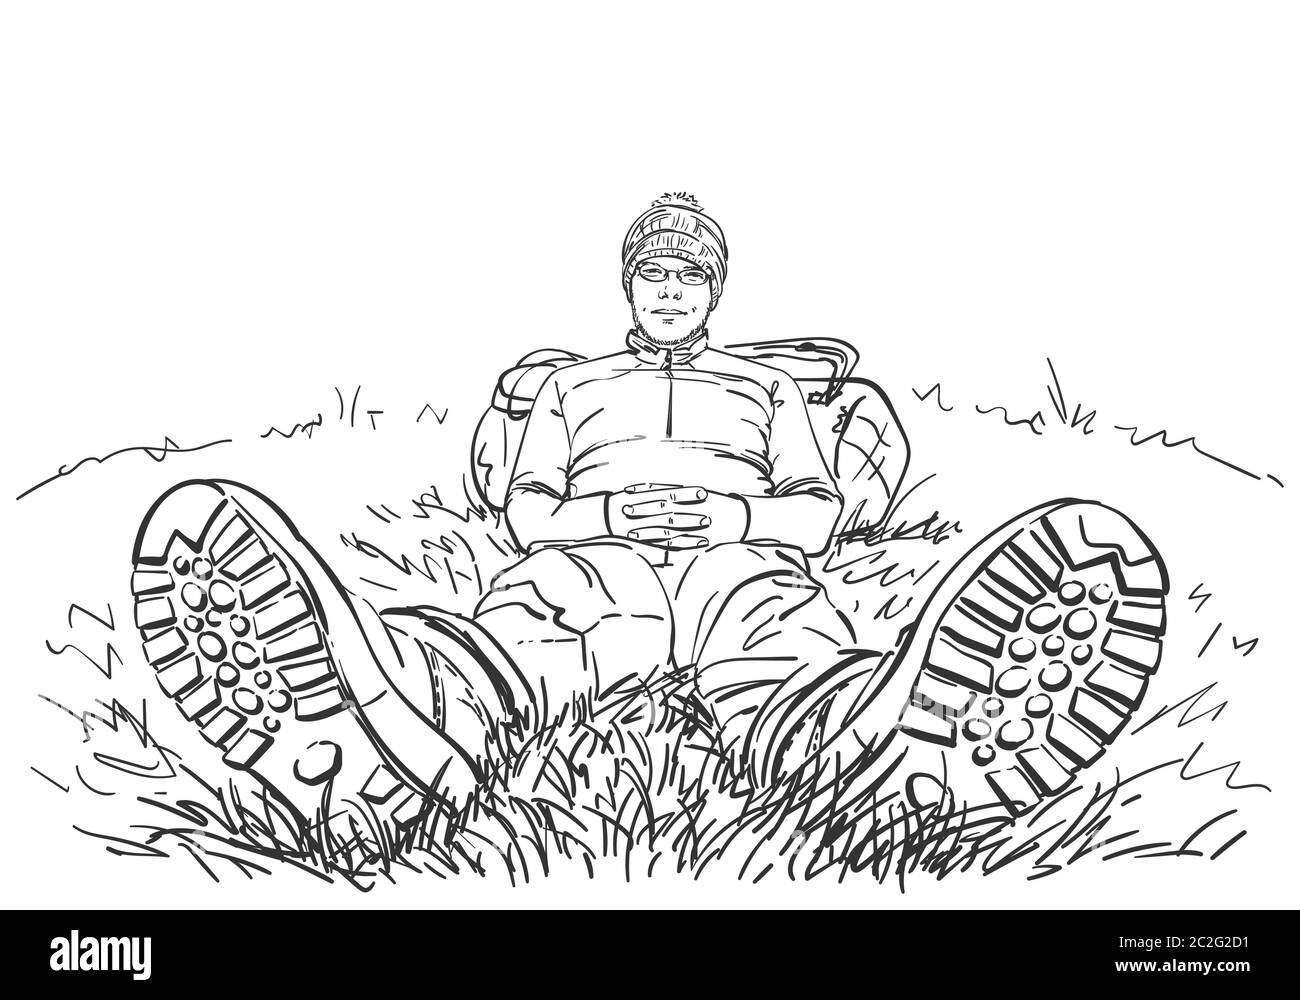 Hochperspektivische Zeichnung des Wanderers, der draußen auf dem Boden sitzt, mit Beinen in Wanderschuhen, nach vorne gestreckt und mit Rücken auf Rucksack ausgeruht. Han Stock Vektor